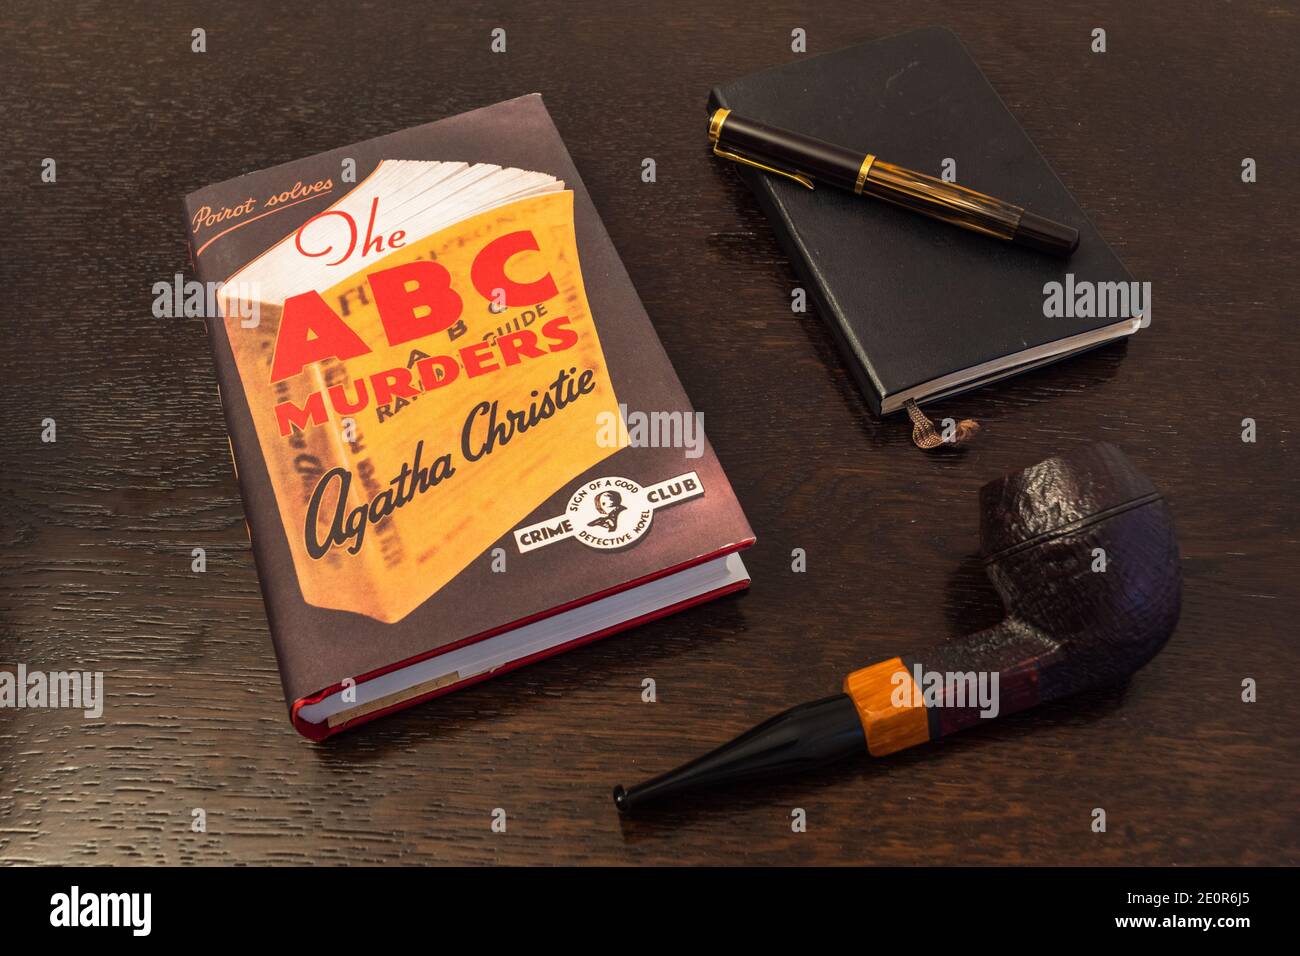 Londres, Inglaterra, Reino Unido - 2 de enero de 2021: El libro ABC de asesinatos de Agatha Christie en una primera edición con facsímil con tubo de tabaco, pluma de Fountian y Noteboo Foto de stock